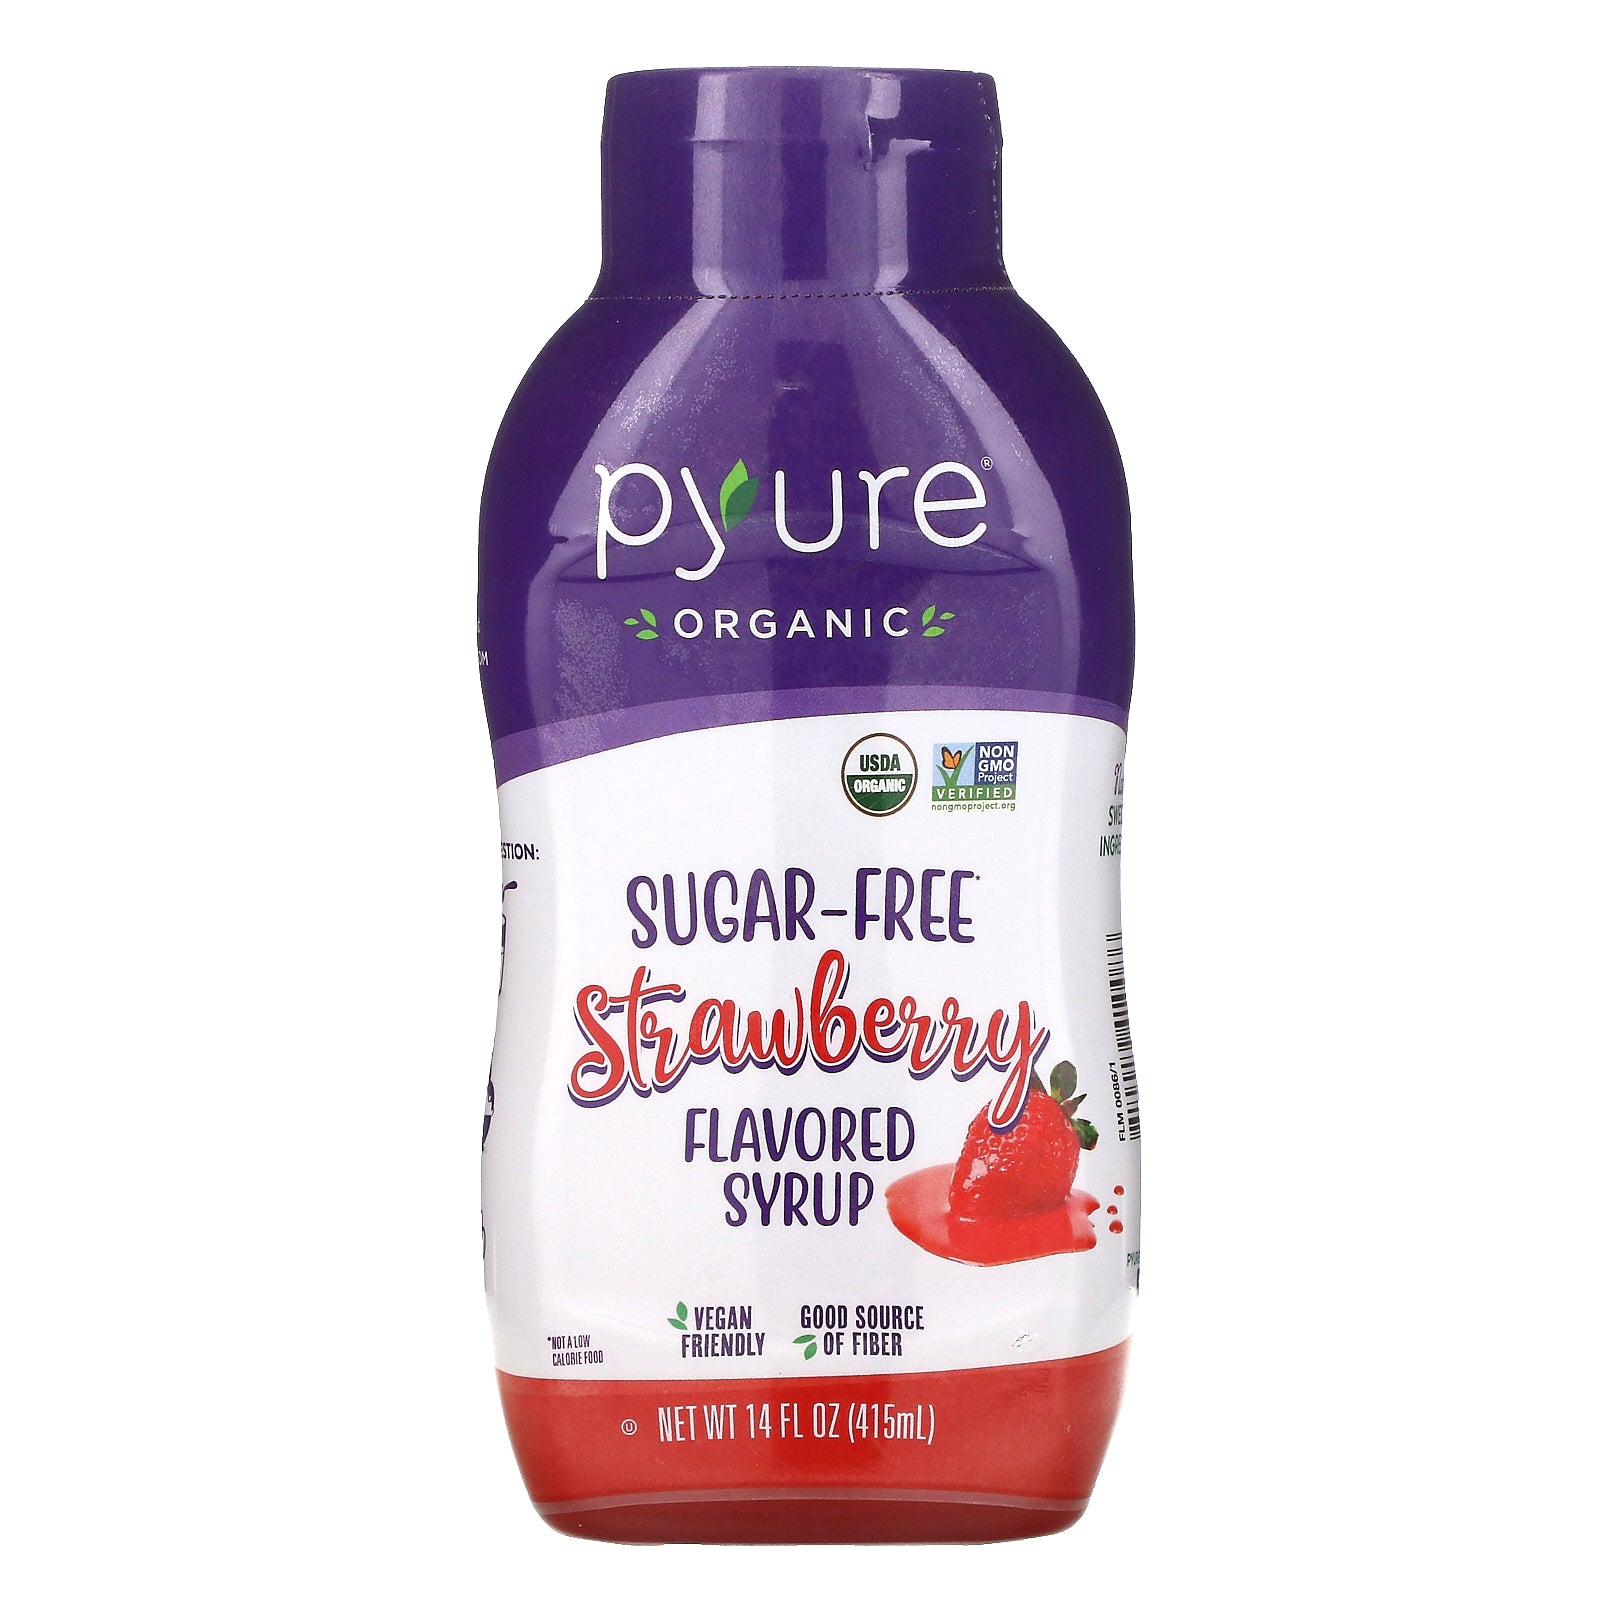 Pyure, Organic Sugar-Free Strawberry Flavored Syrup, 14 fl oz (415 ml)